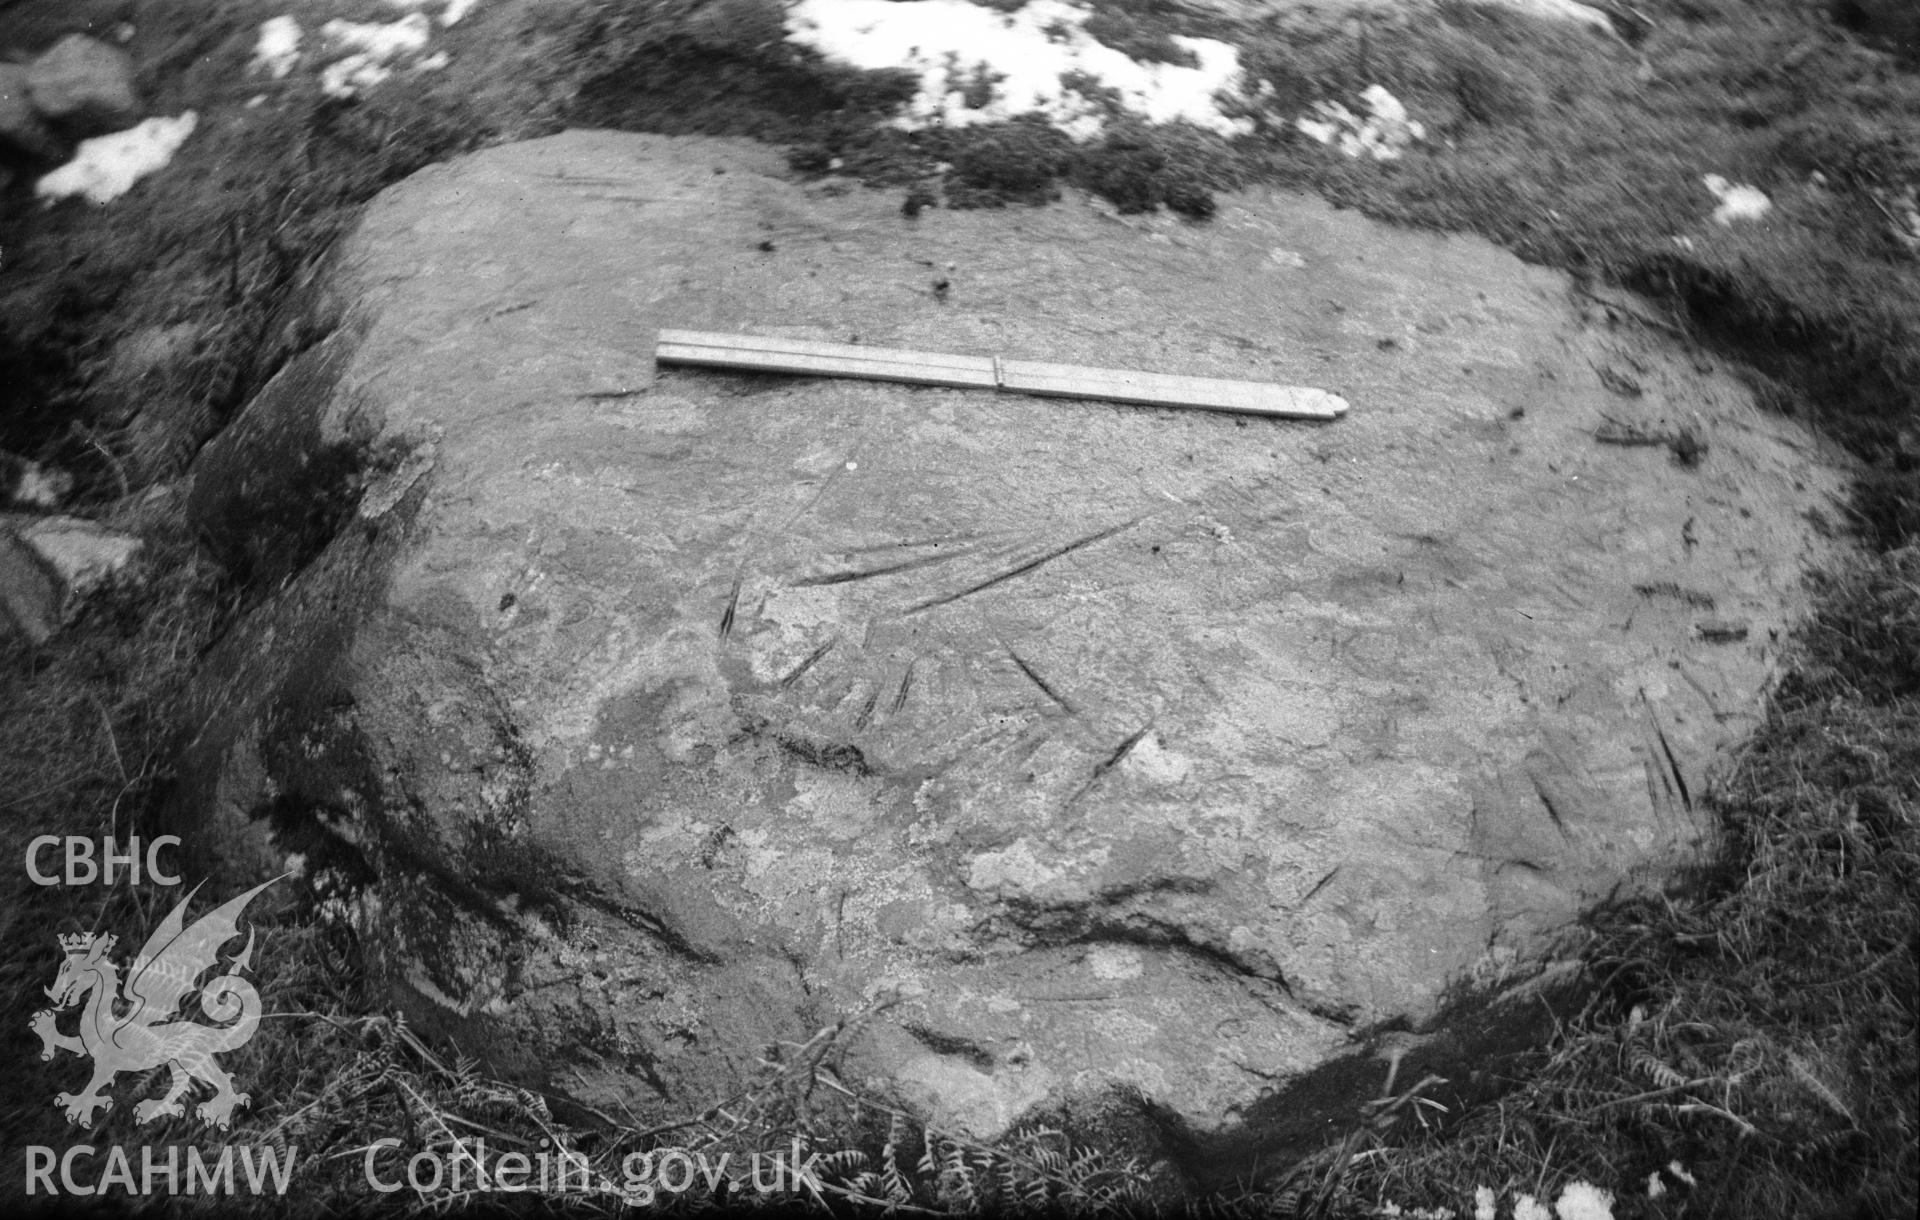 View of arrow stone at Aber taken 09.02.1950.